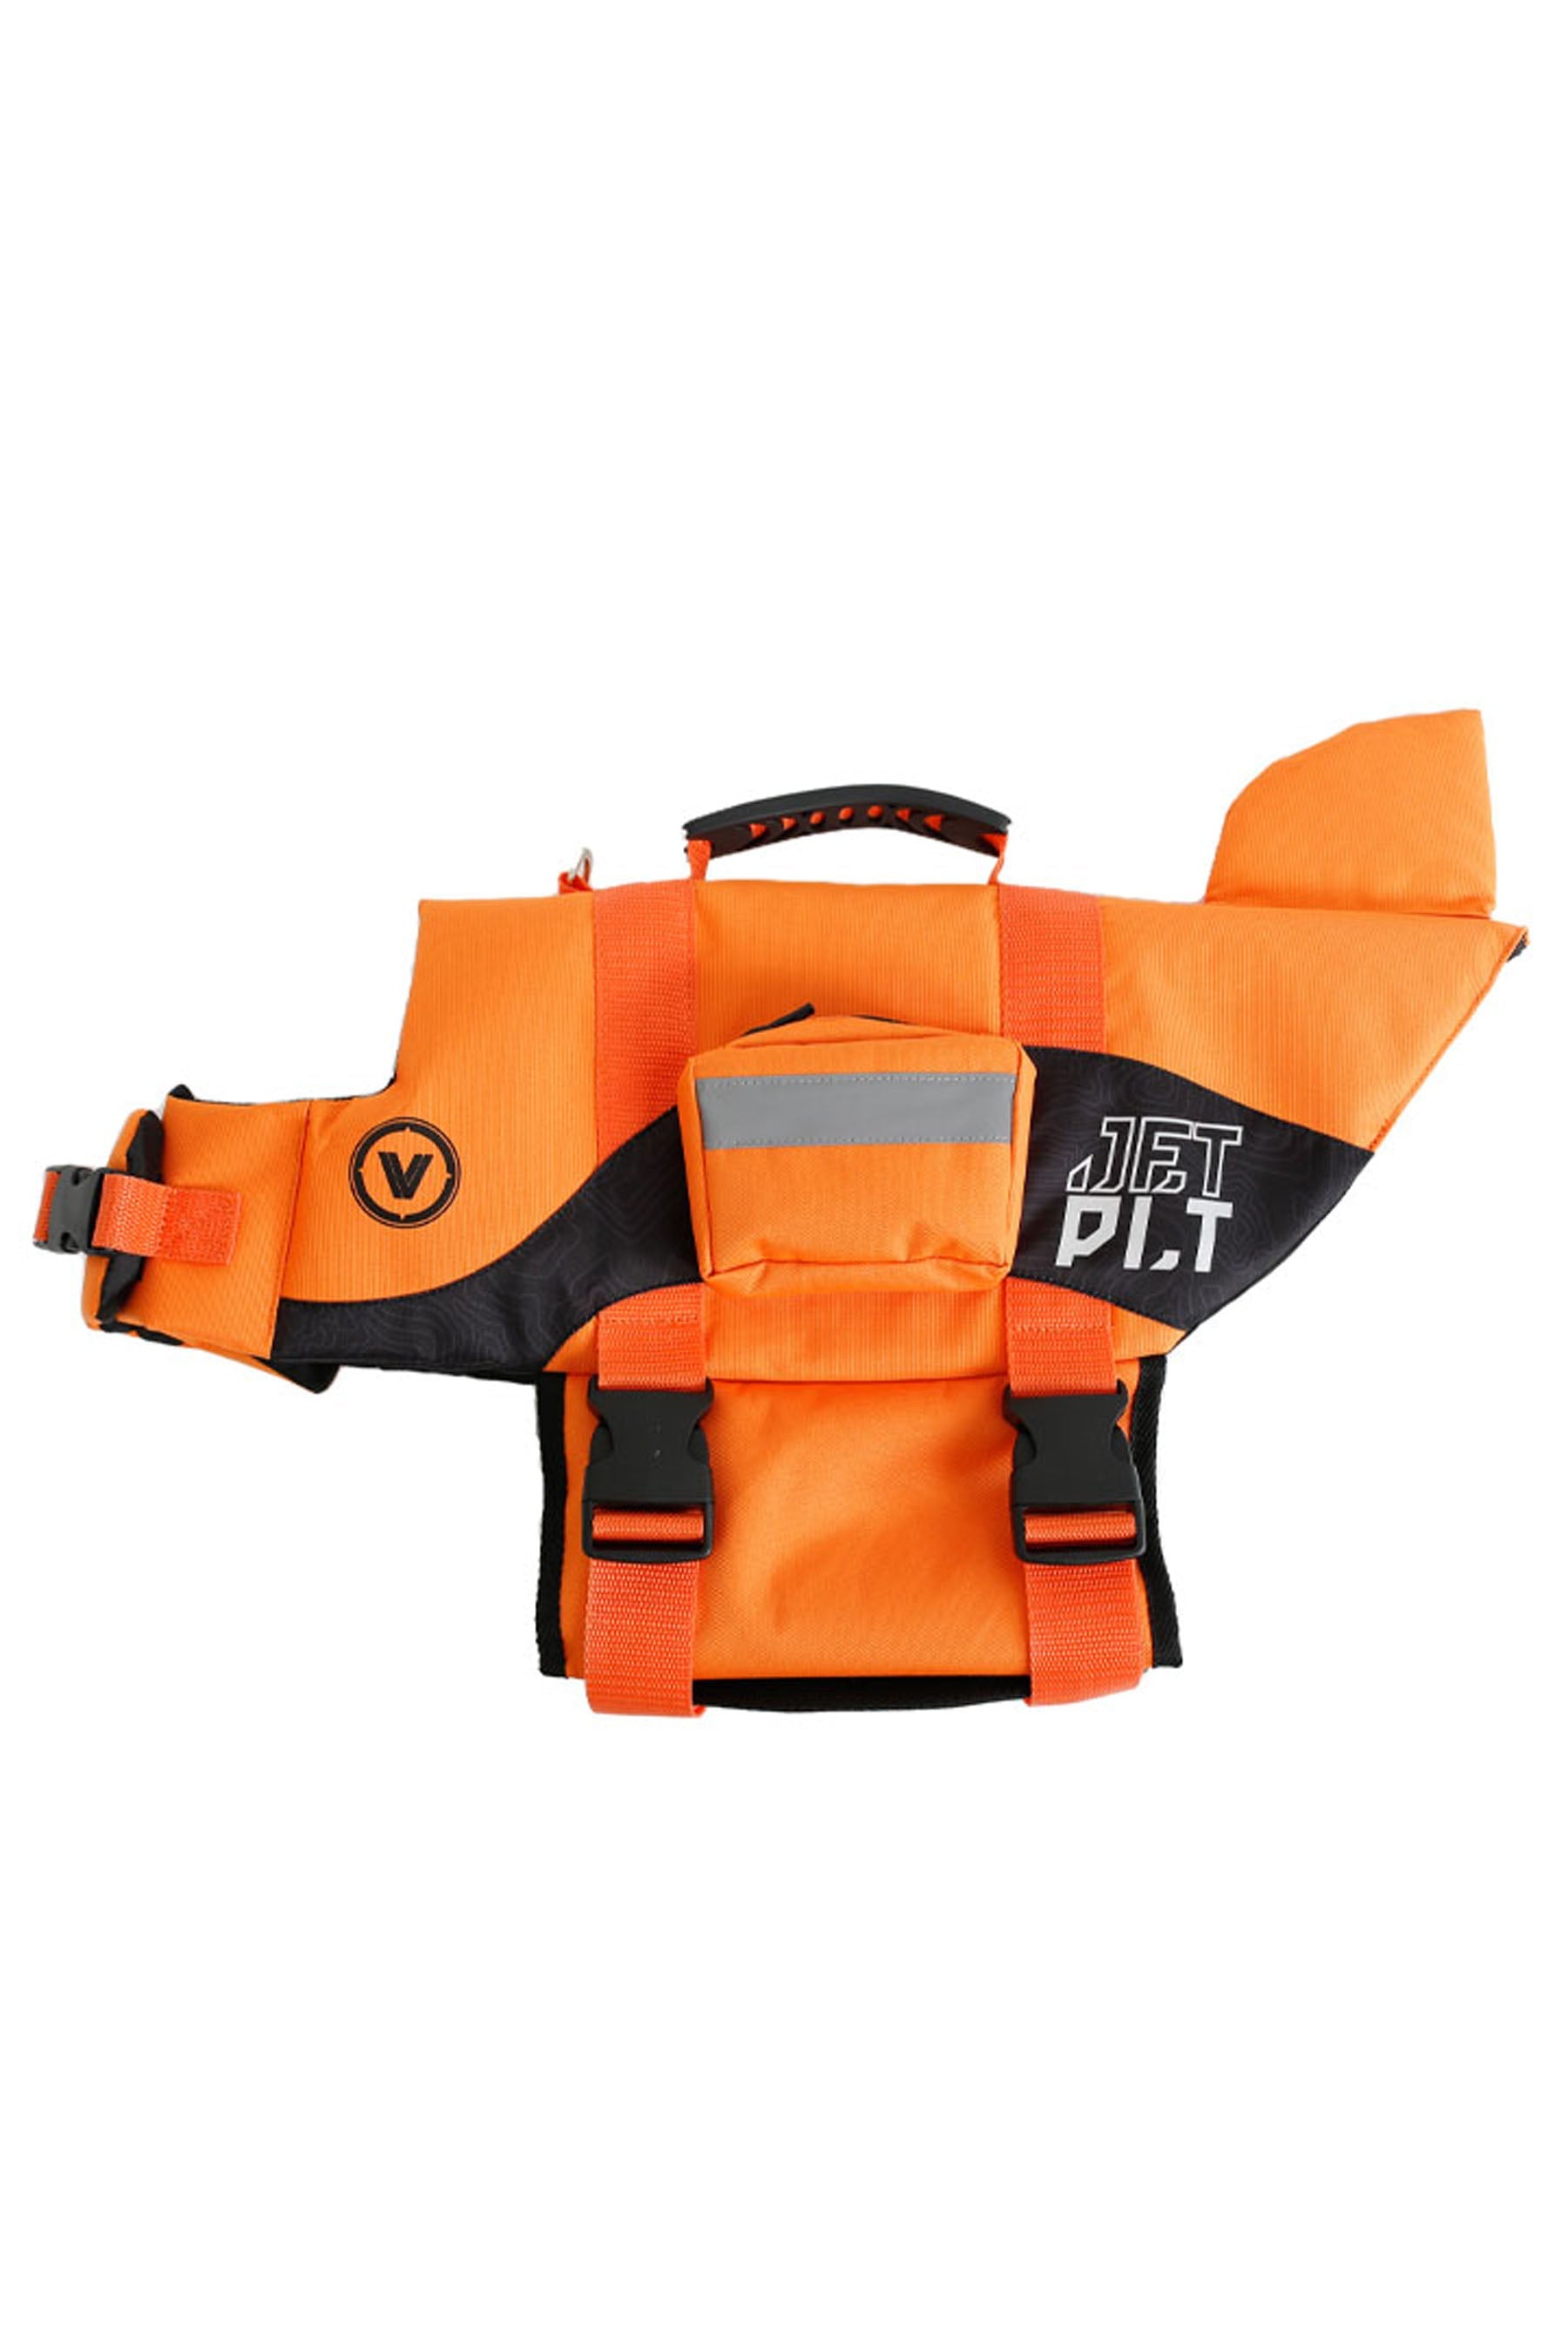 Jetpilot Venture Dog Pfd - Orange 1